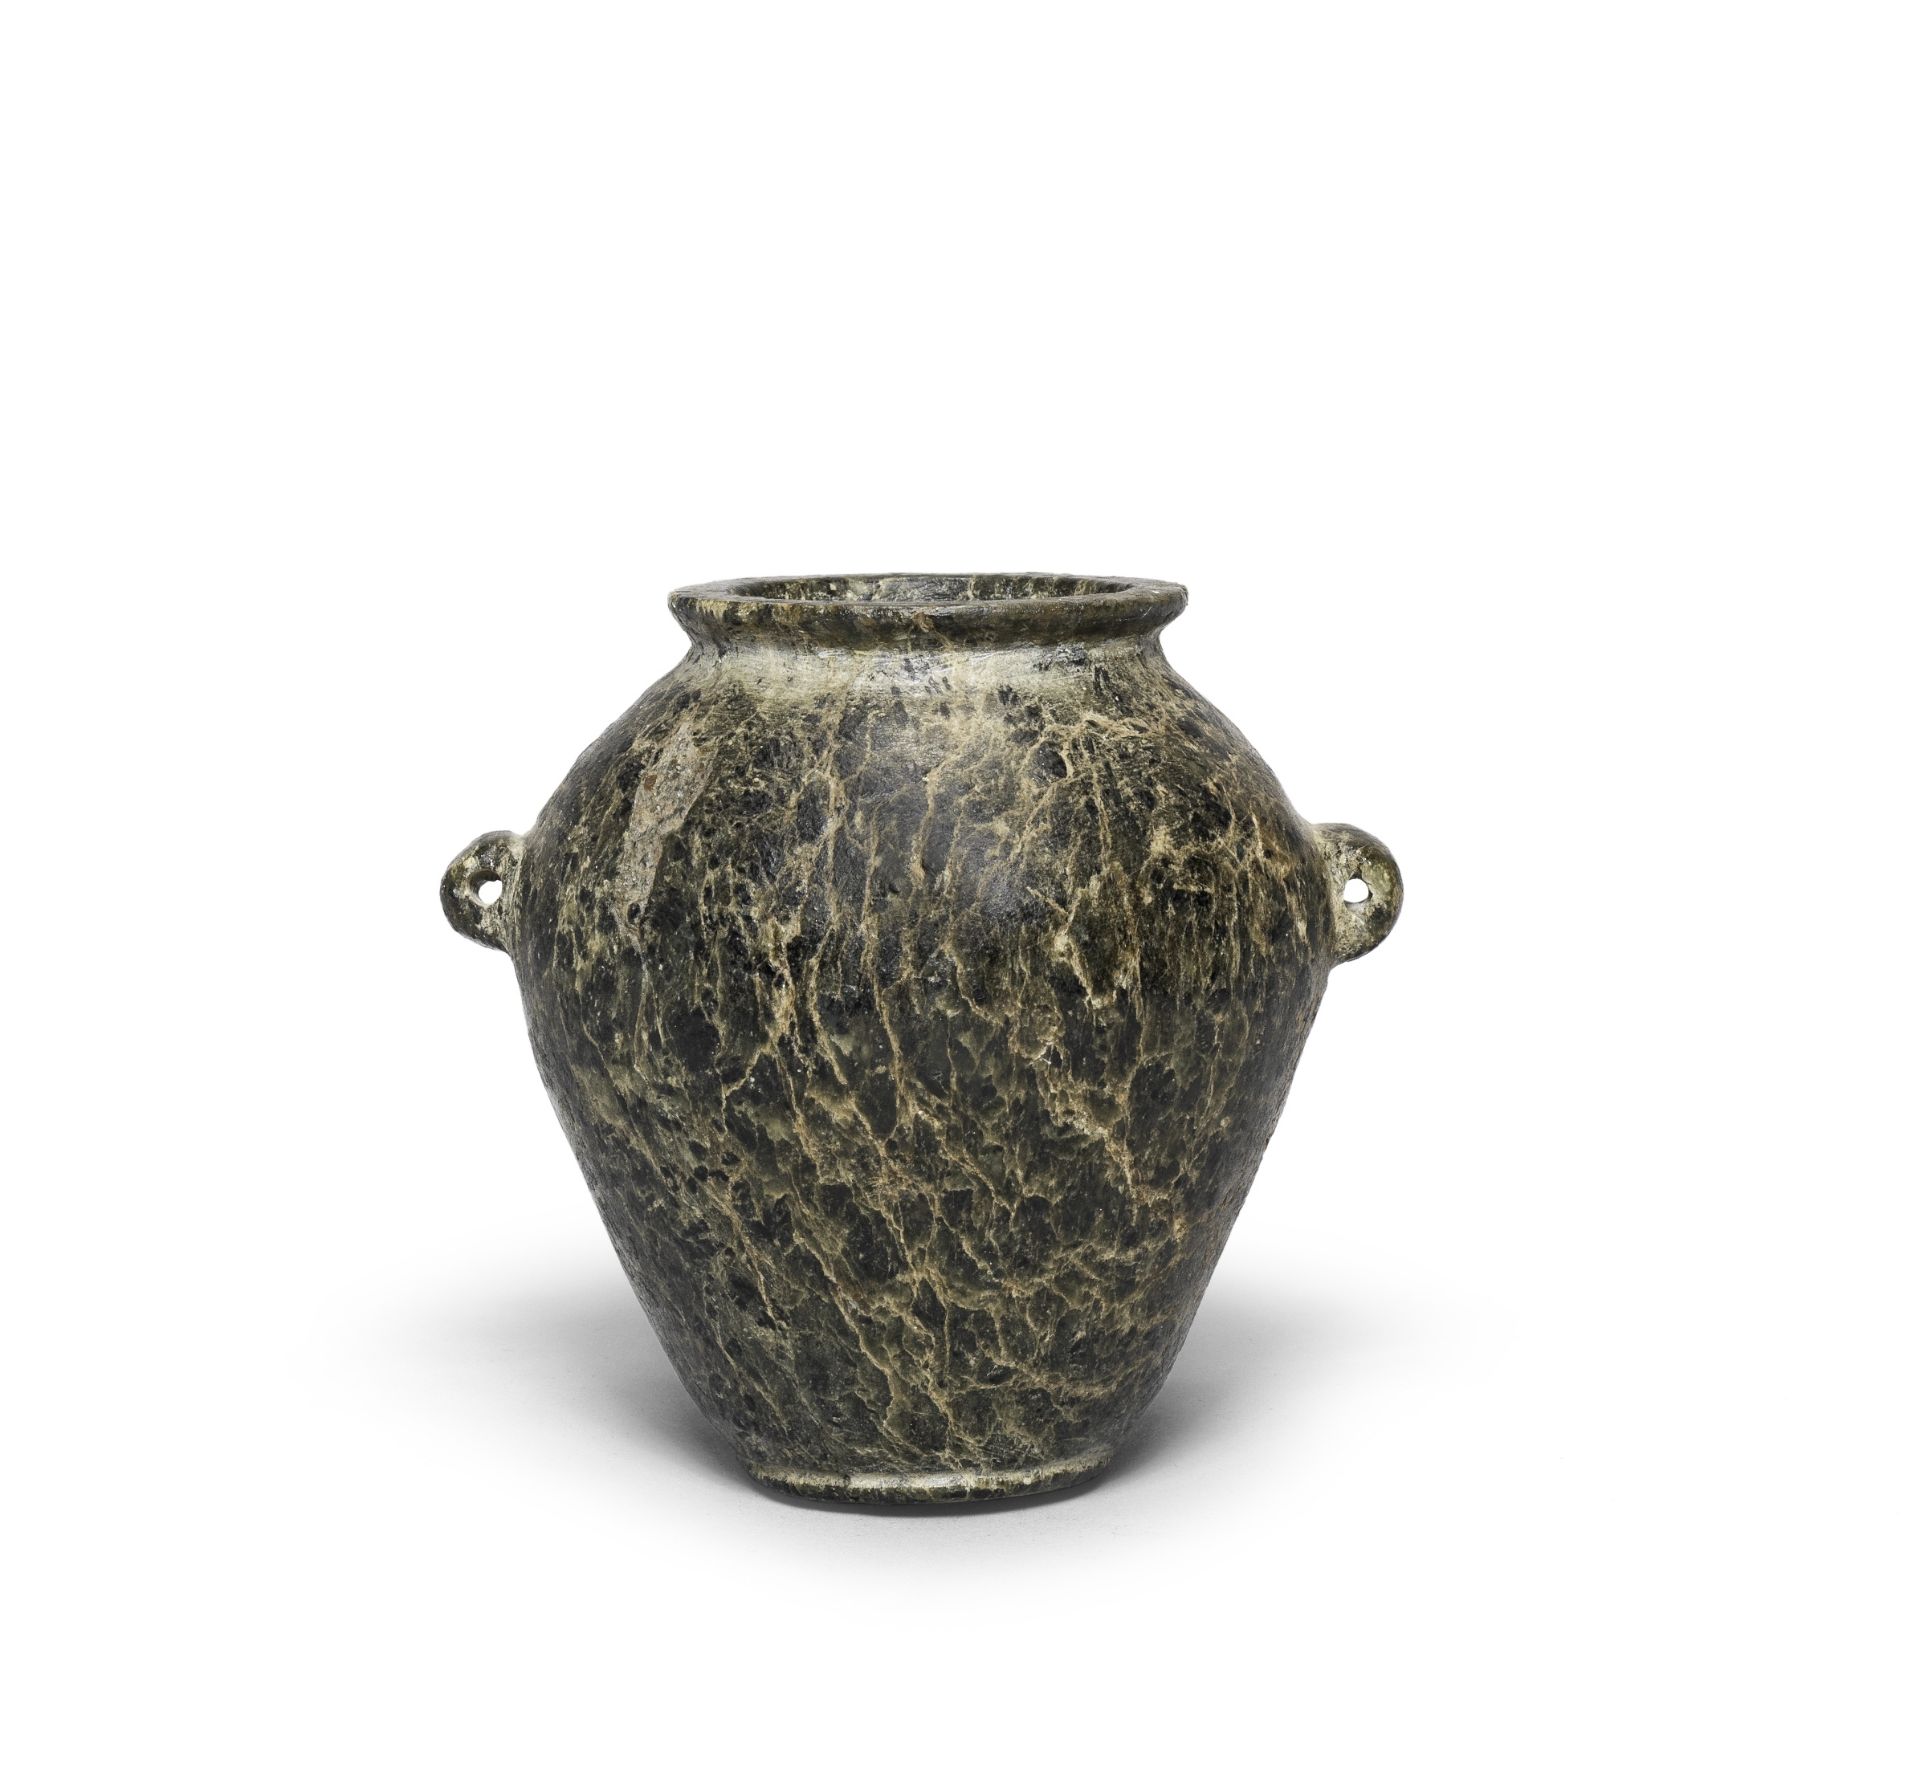 An Egyptian serpentine jar